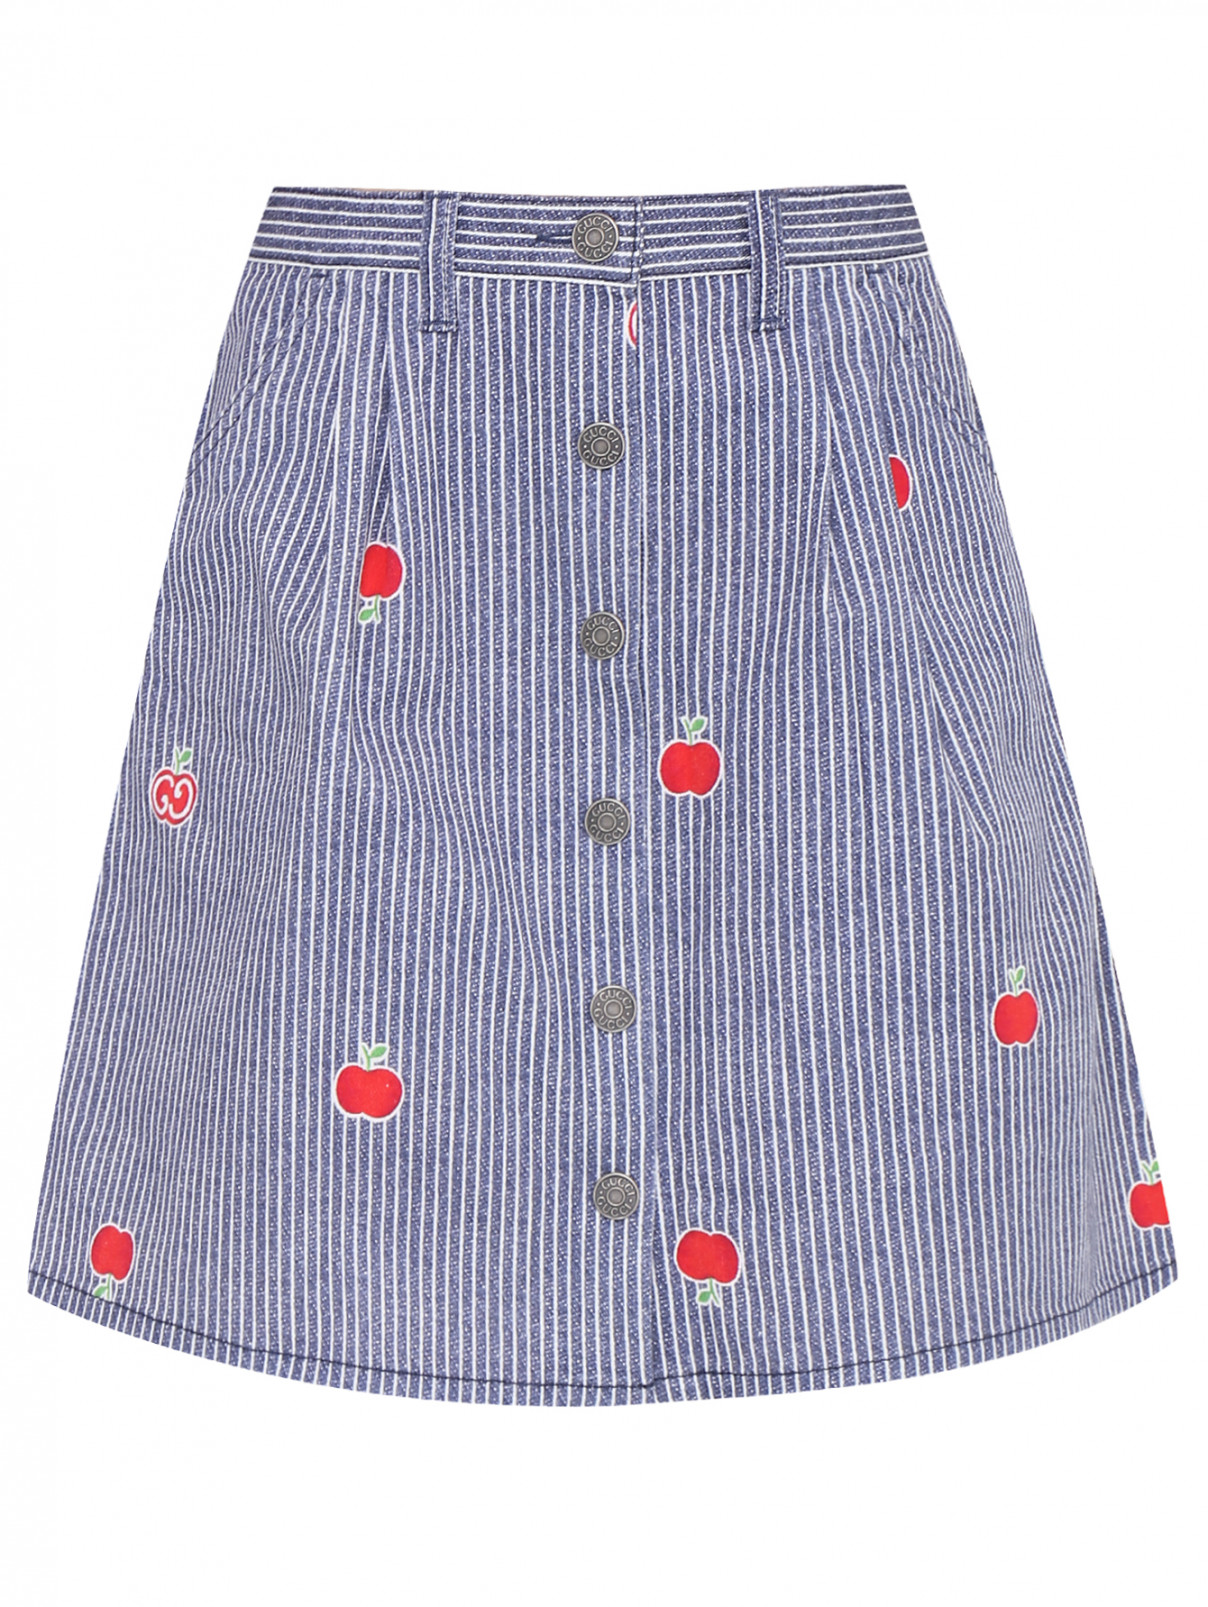 Джинсовая юбка с узором Gucci  –  Общий вид  – Цвет:  Узор